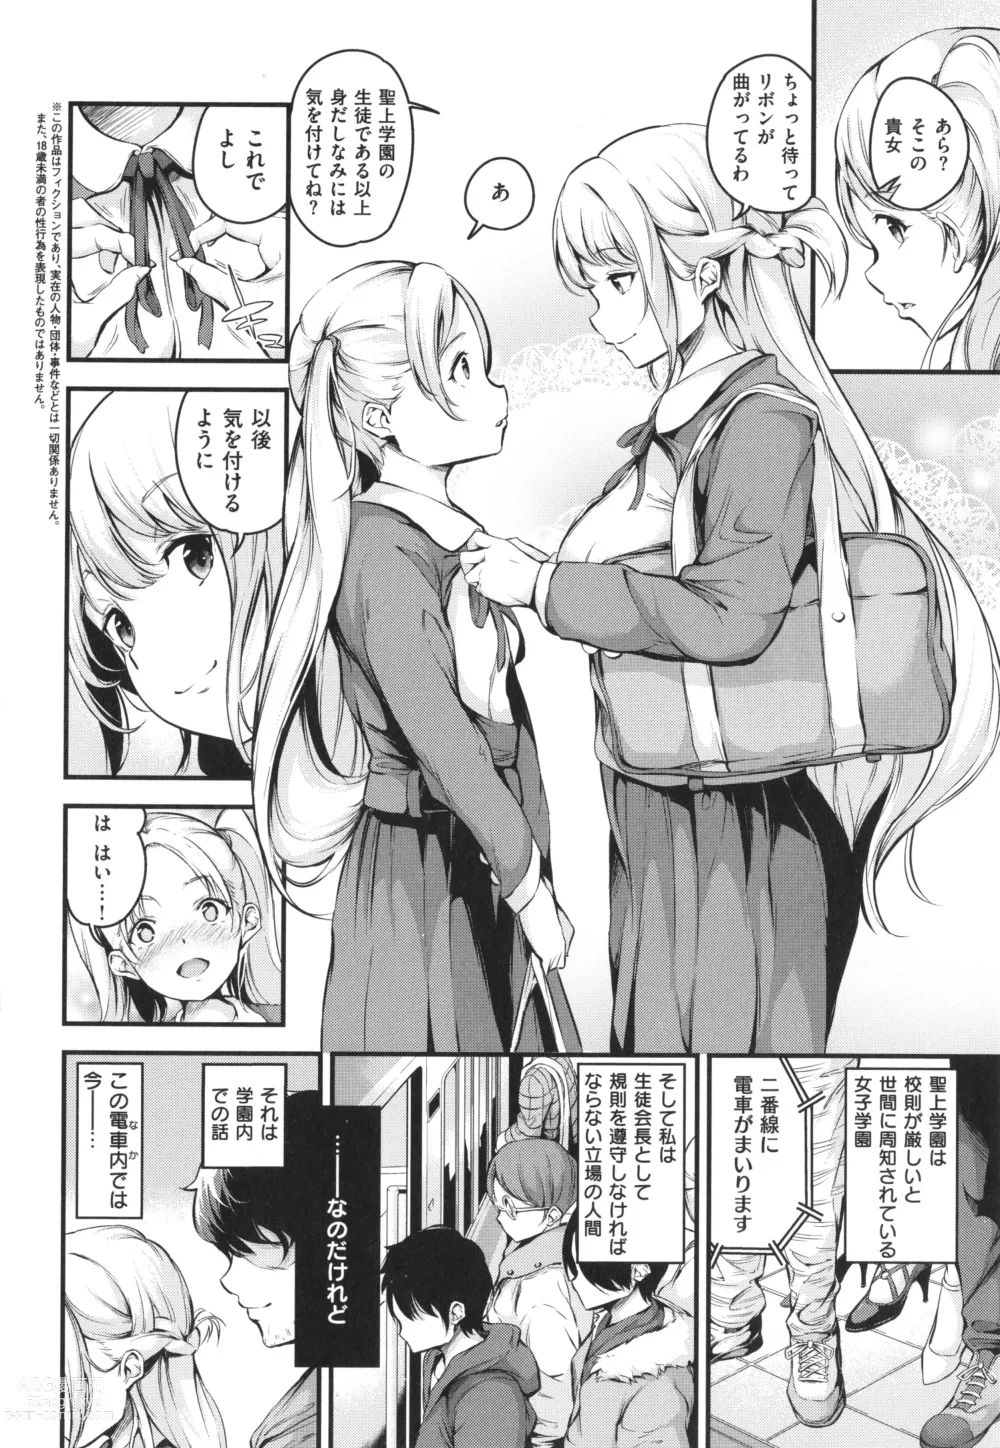 Page 8 of manga Mesutoiro